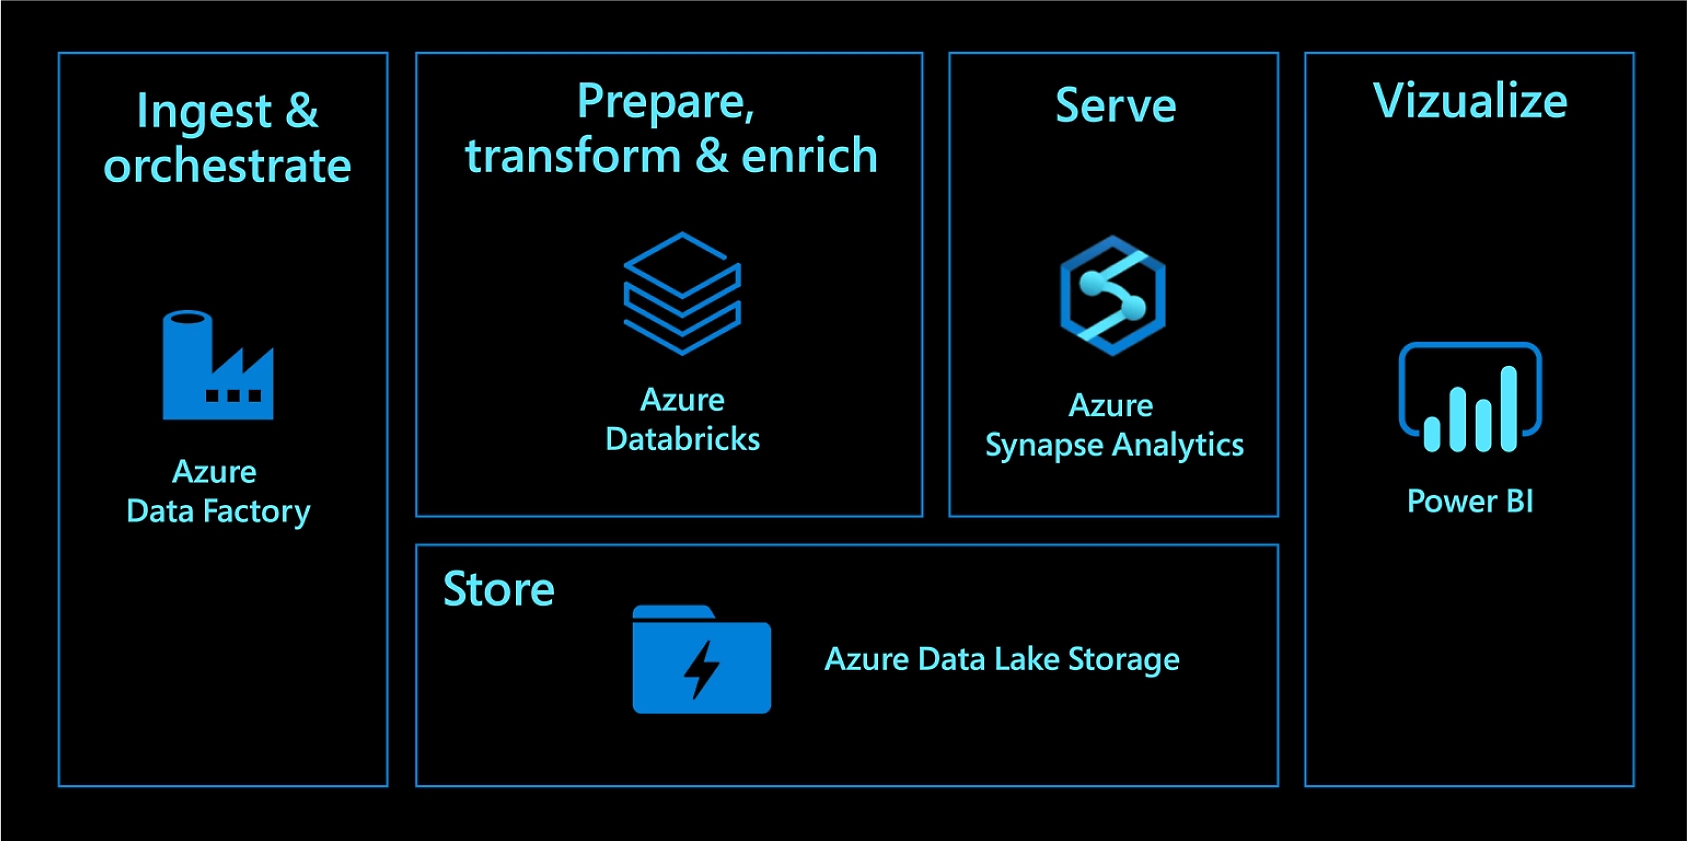 Azure Data Factory ile alma ve düzenleme. Azure Databricks ile hazırlama, dönüştürme ve zenginleştirme. Azure Synapse Analytics ile hizmet verme. Azure Data Lake Storage ile depolama. Power BI ile görselleştirme.